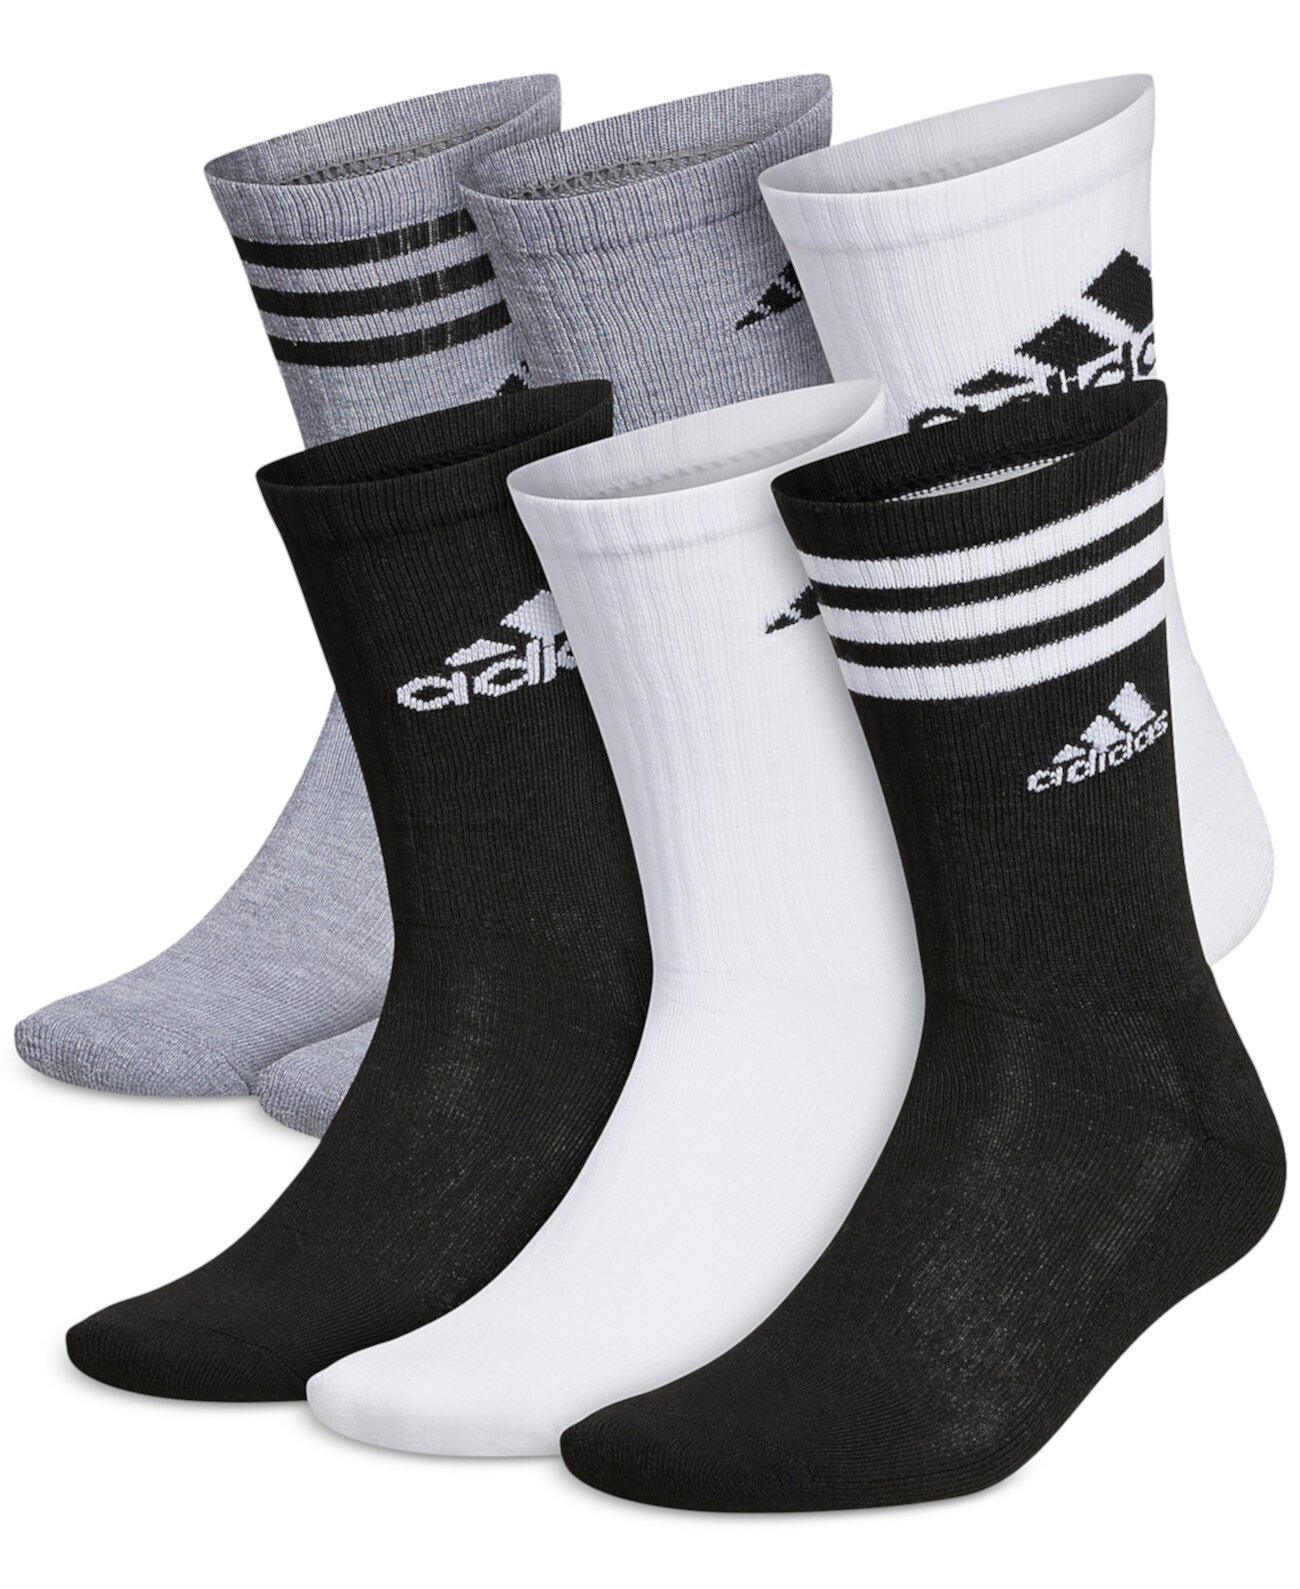 Мужские носки с круглым вырезом Athletic с мягкой подкладкой — 6 шт. Adidas